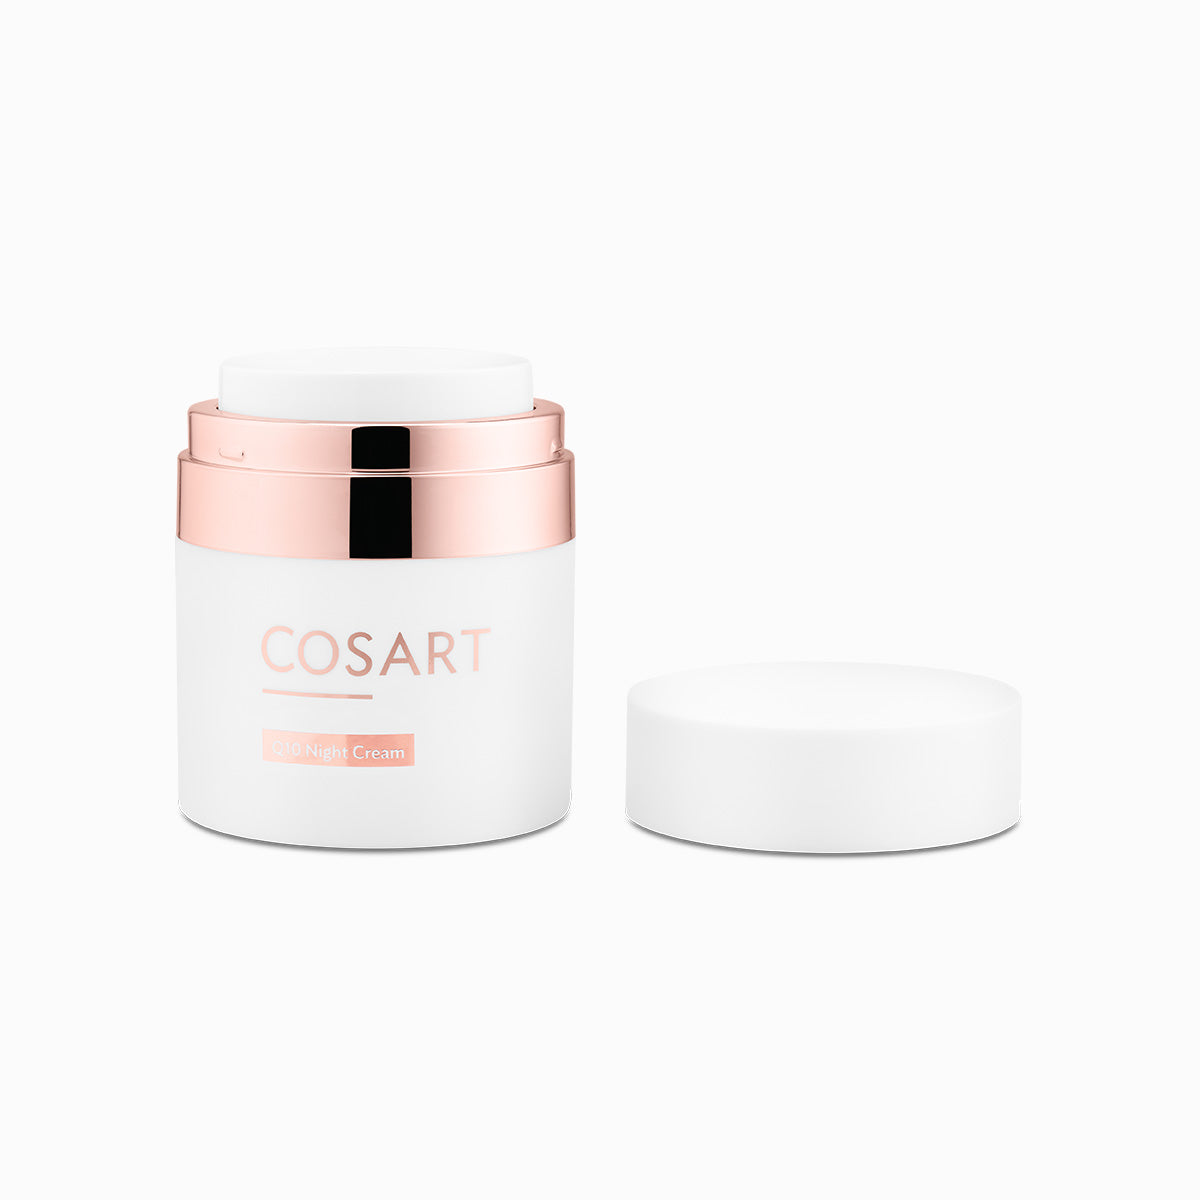 COSART | Q10 Night Cream